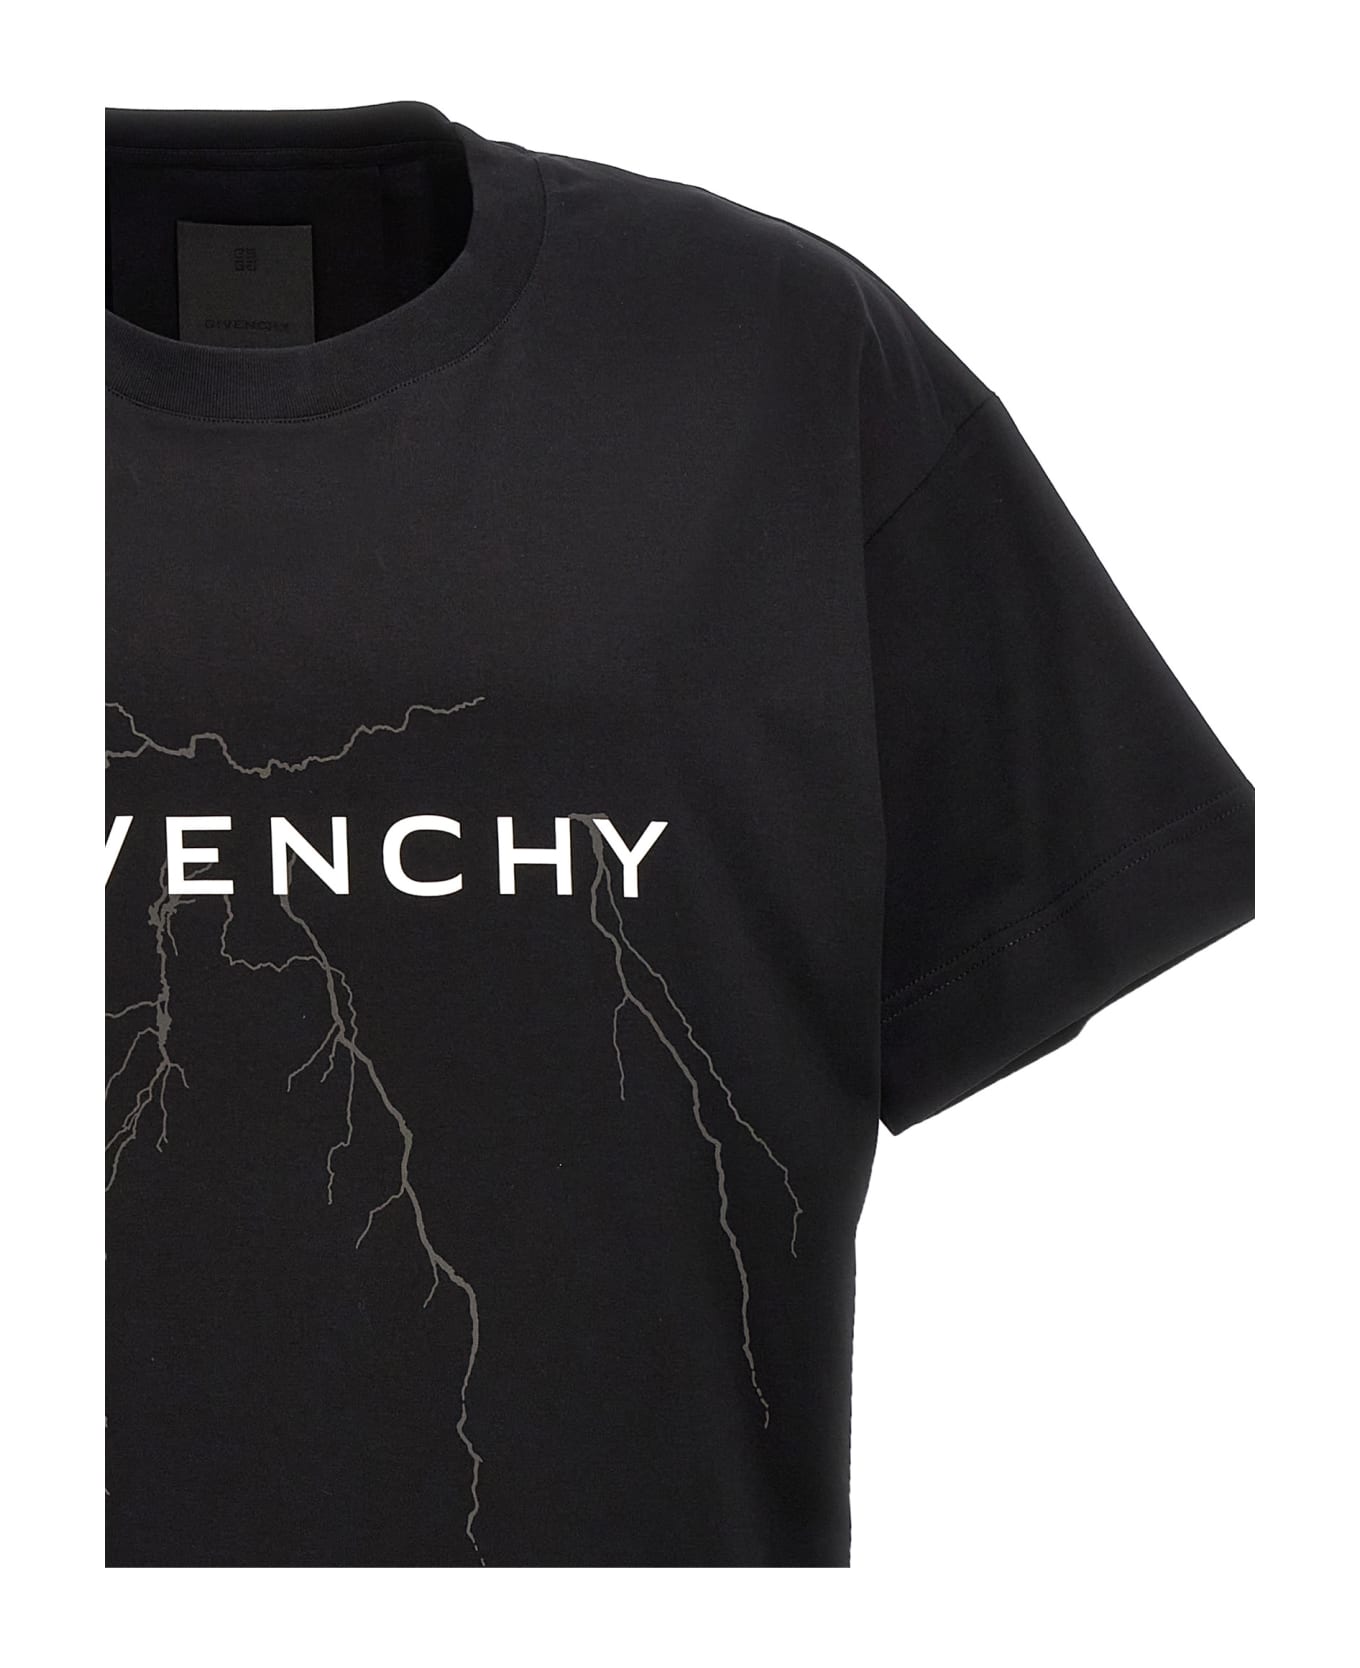 Givenchy Printed T-shirt - Black